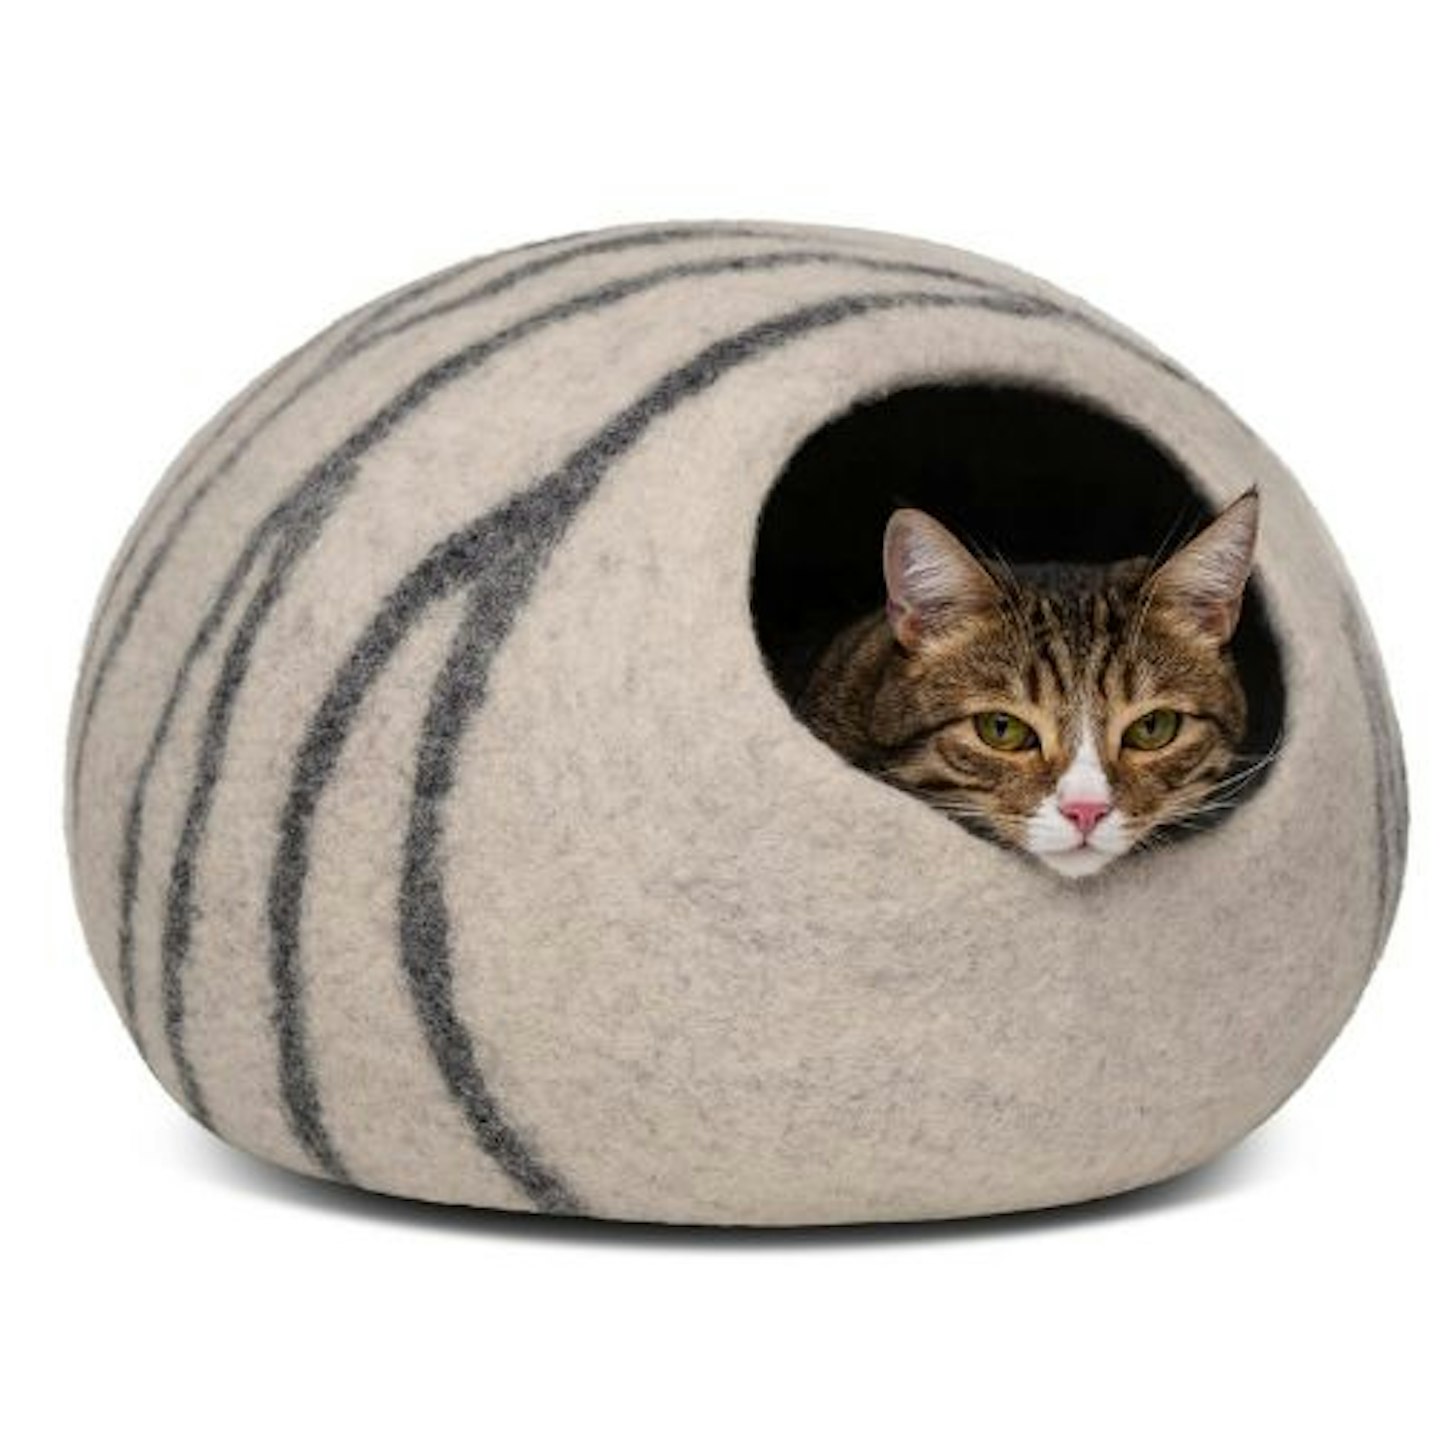  MEOWFIA Premium Felt Cat Bed Cave 